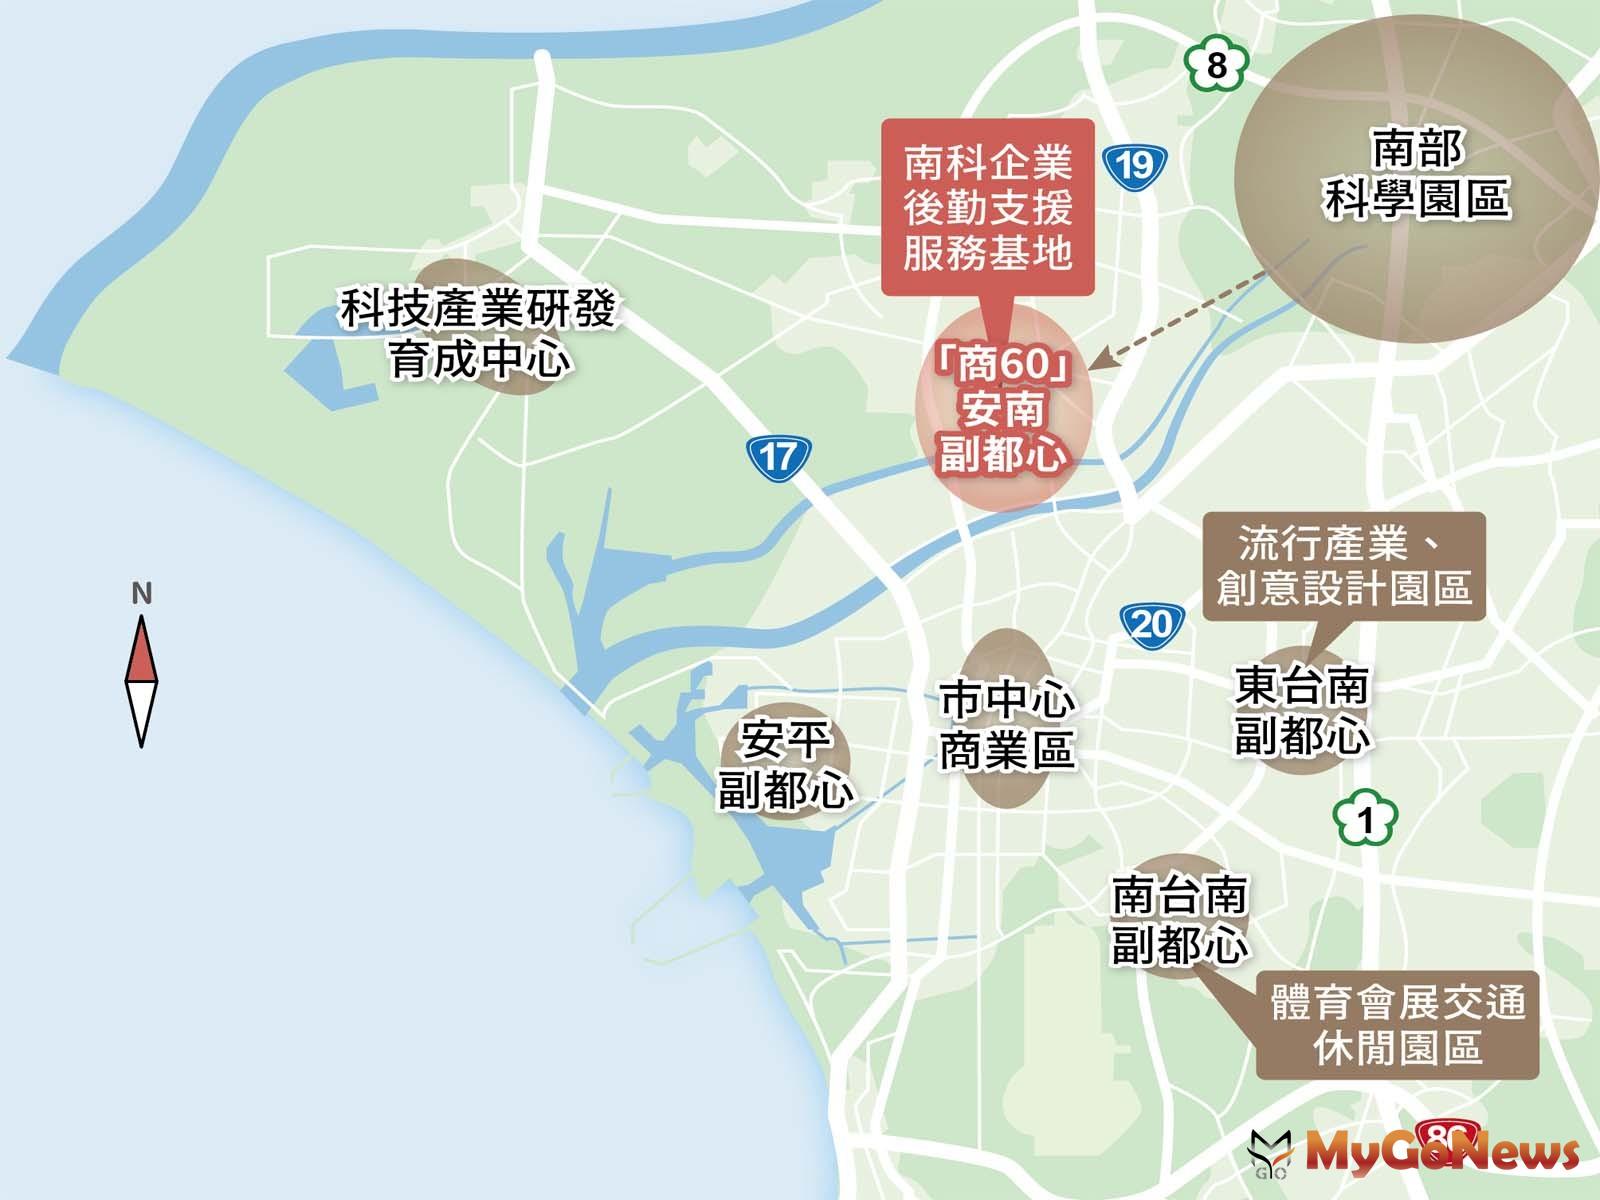 台南「商60」安南副都心打造「南科企業後勤支援之複合機能服務基地」。 MyGoNews房地產新聞 專題報導